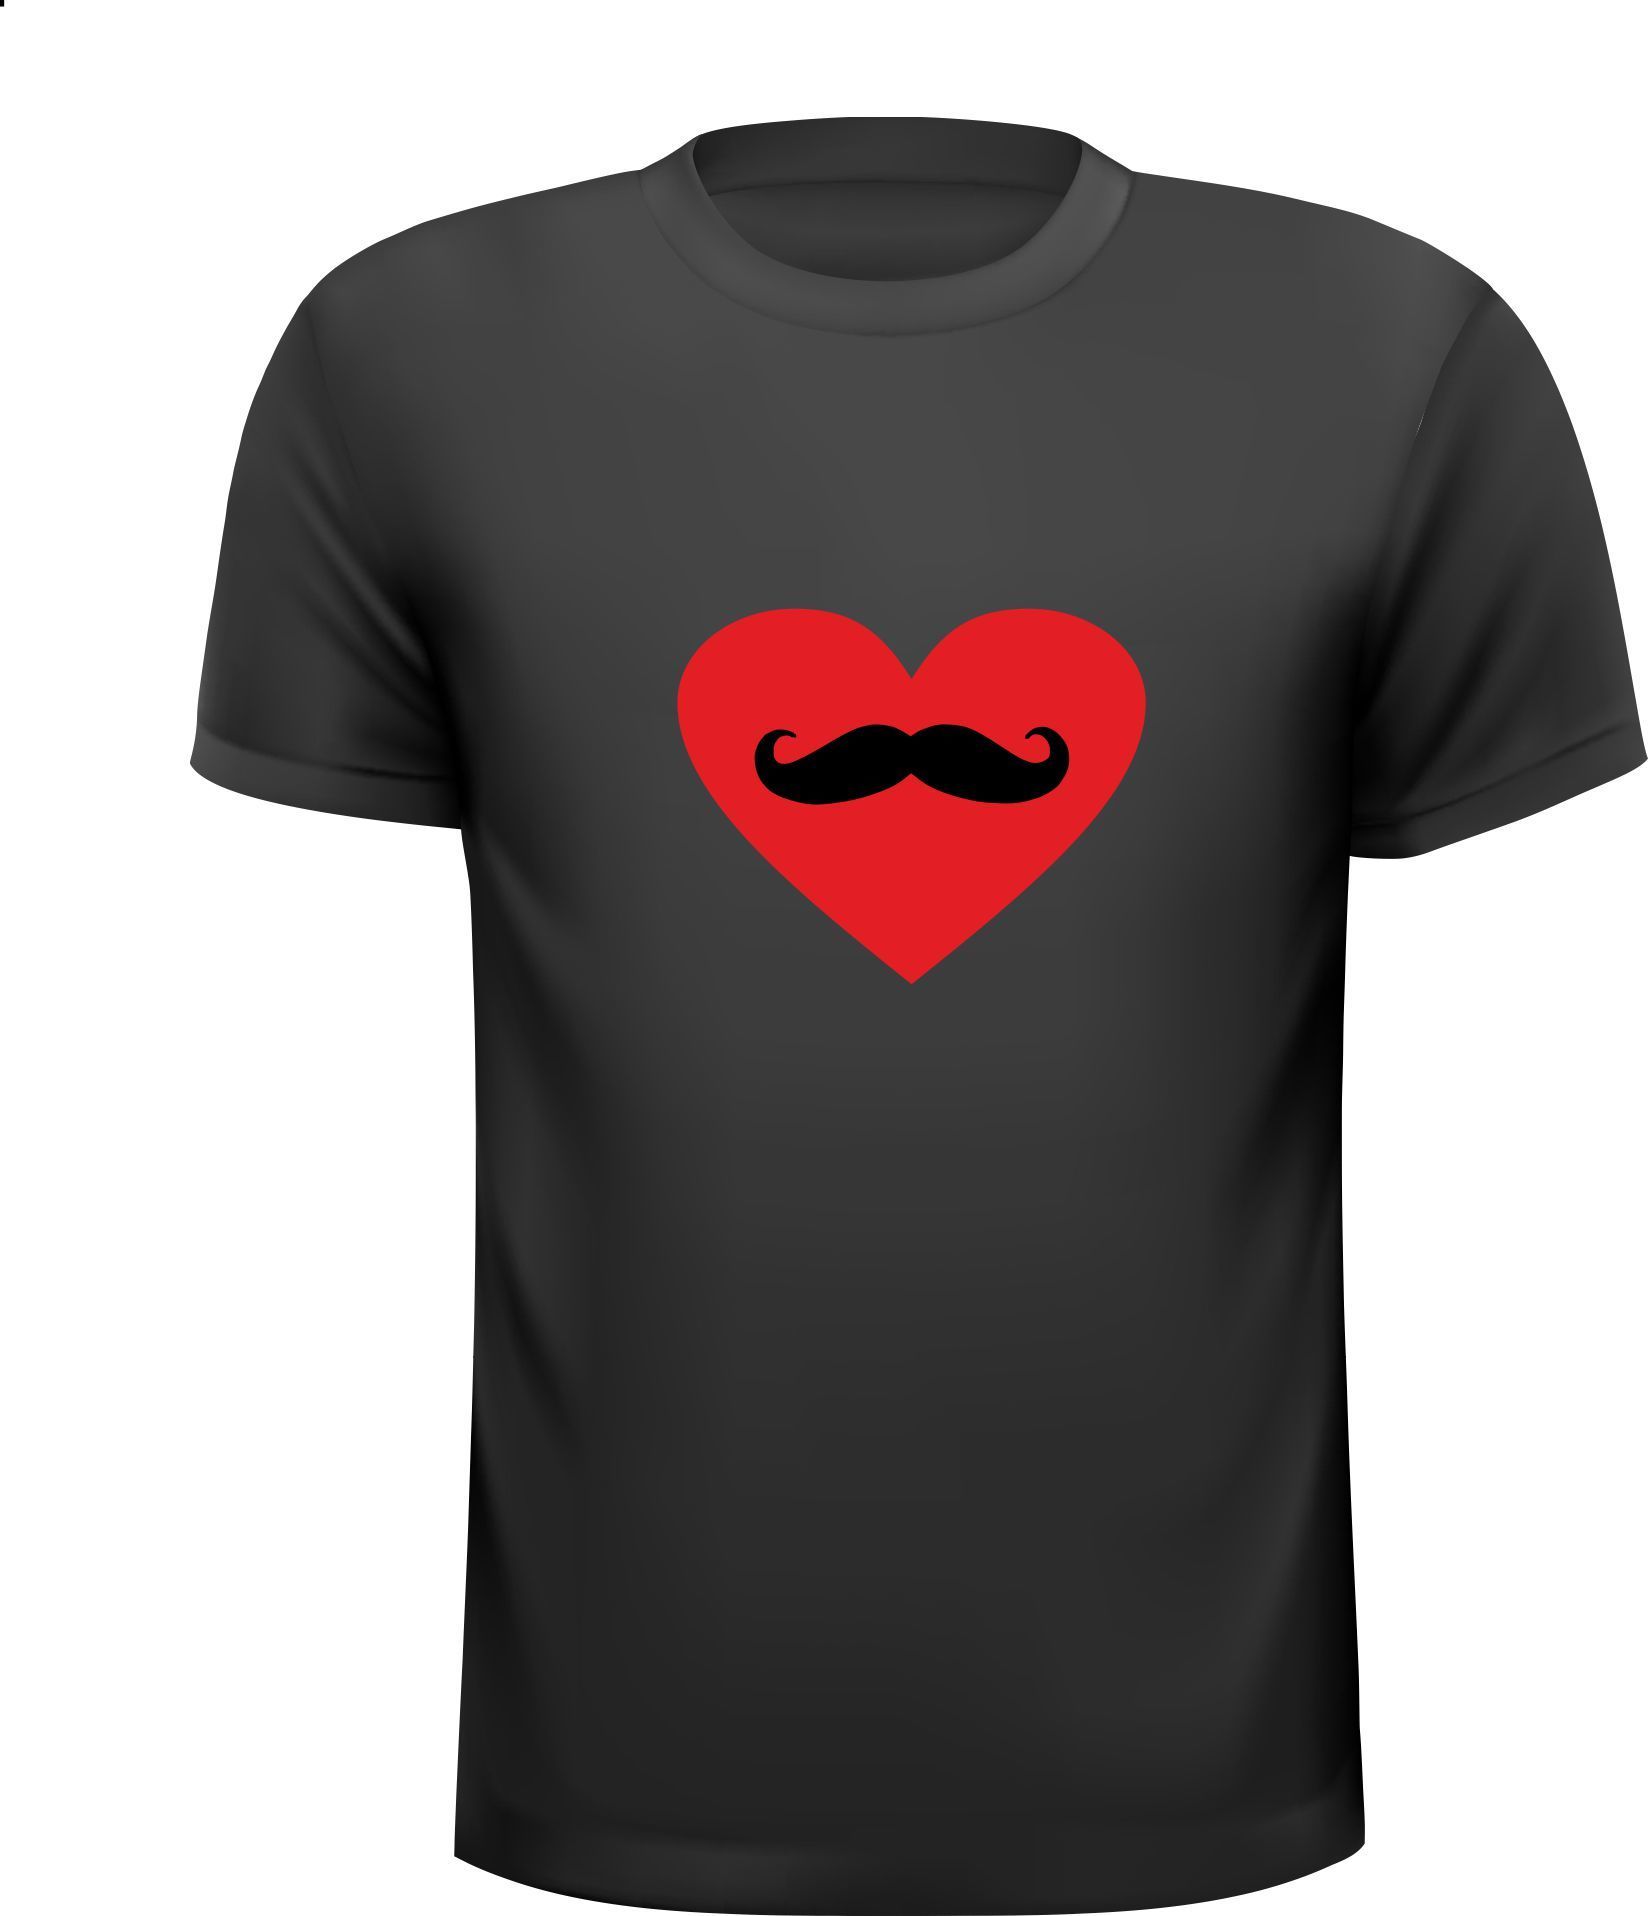 T-shirt rood hart met snor erin getekend